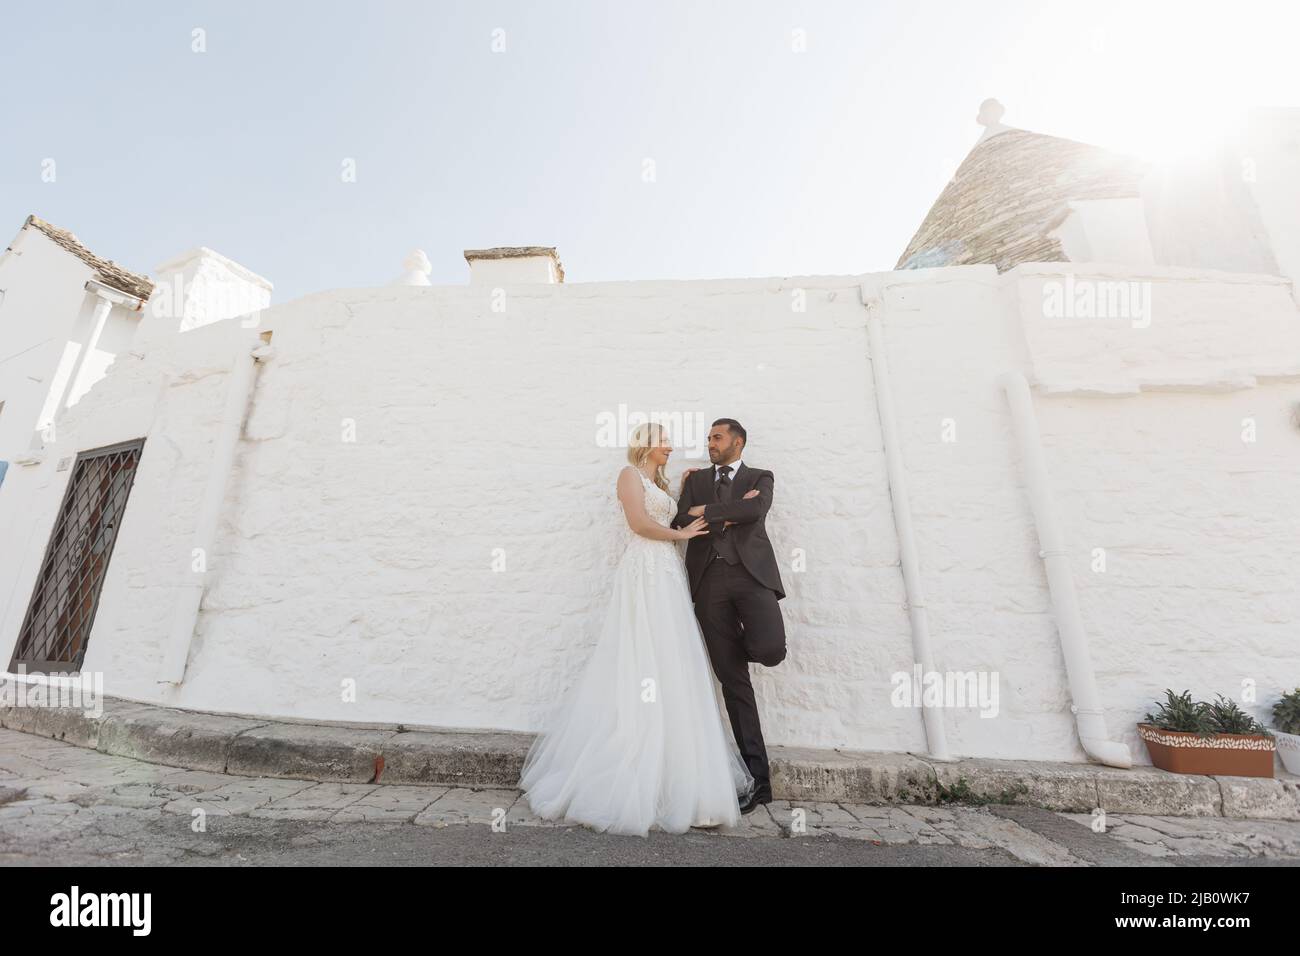 Ein romantisches Ehepaar, eine Frau im weißen Hochzeitskleid und ein Mann im schwarzen Anzug stehen zusammen, schauen sich an der Wand an Stockfoto